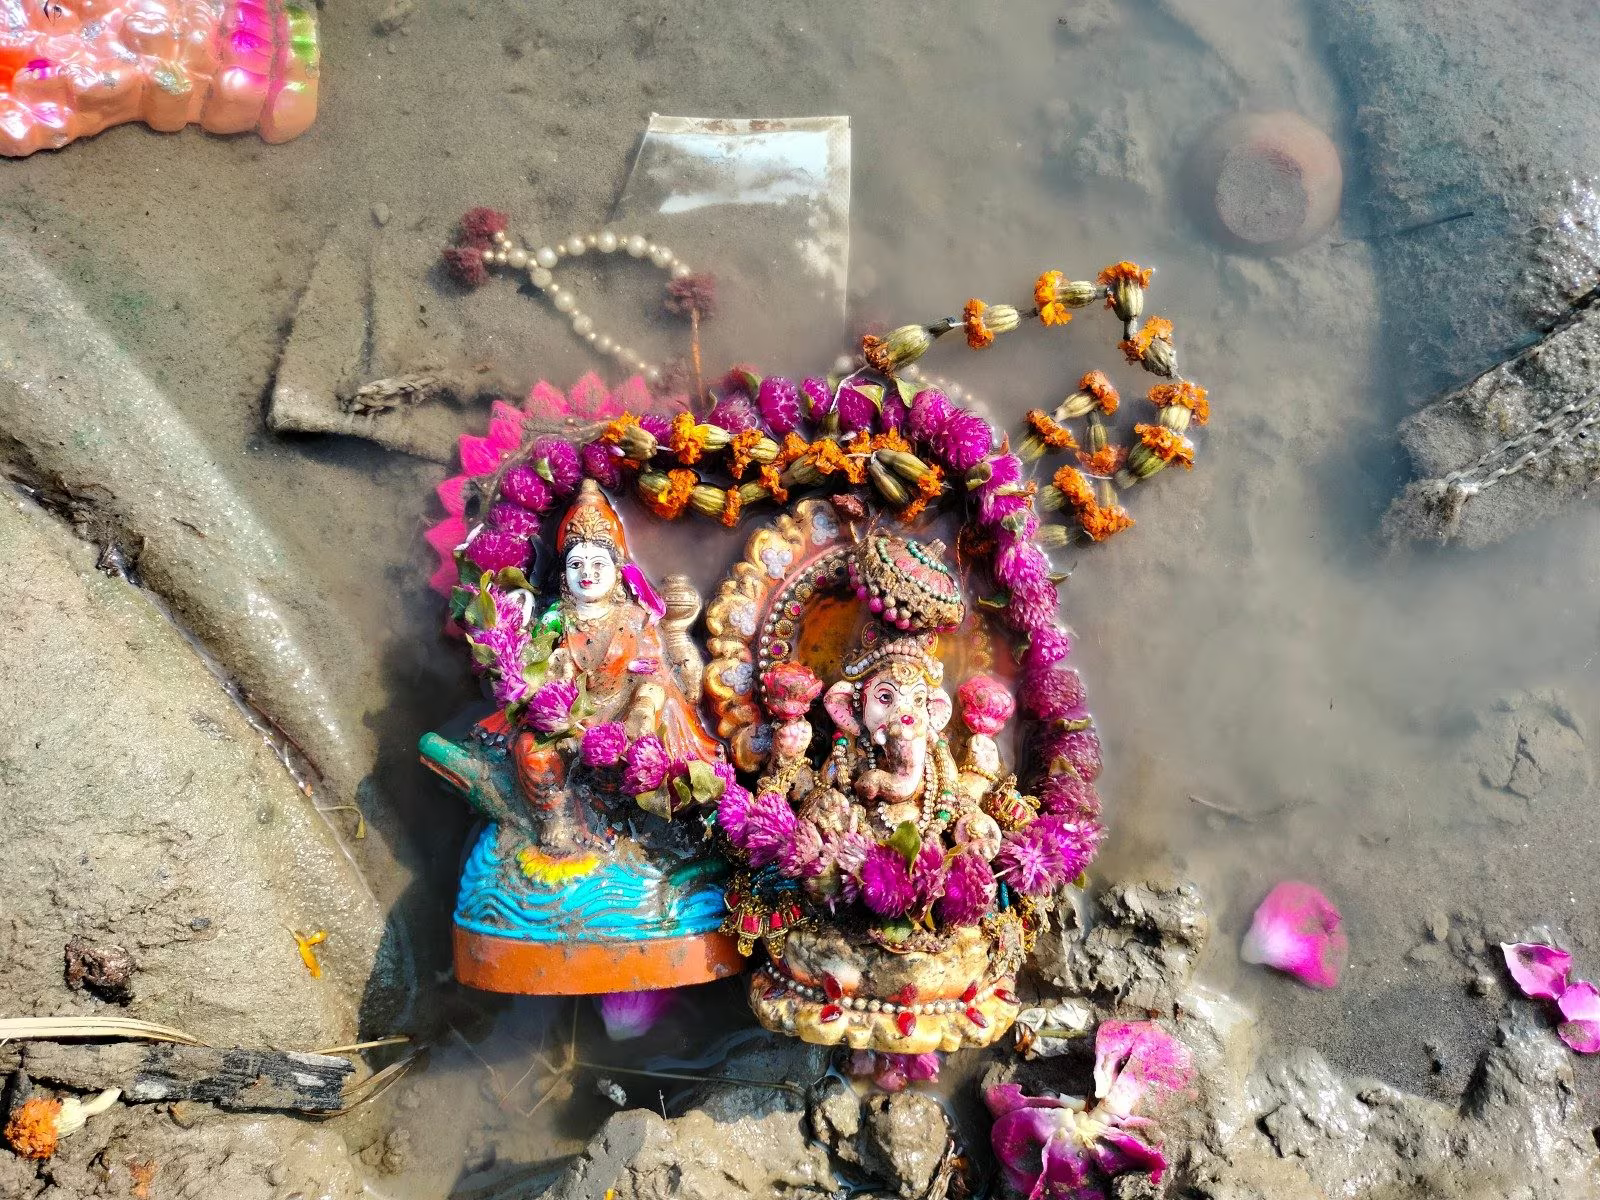 Right way to dispose of Ganesh and Laxmi idols after Diwali